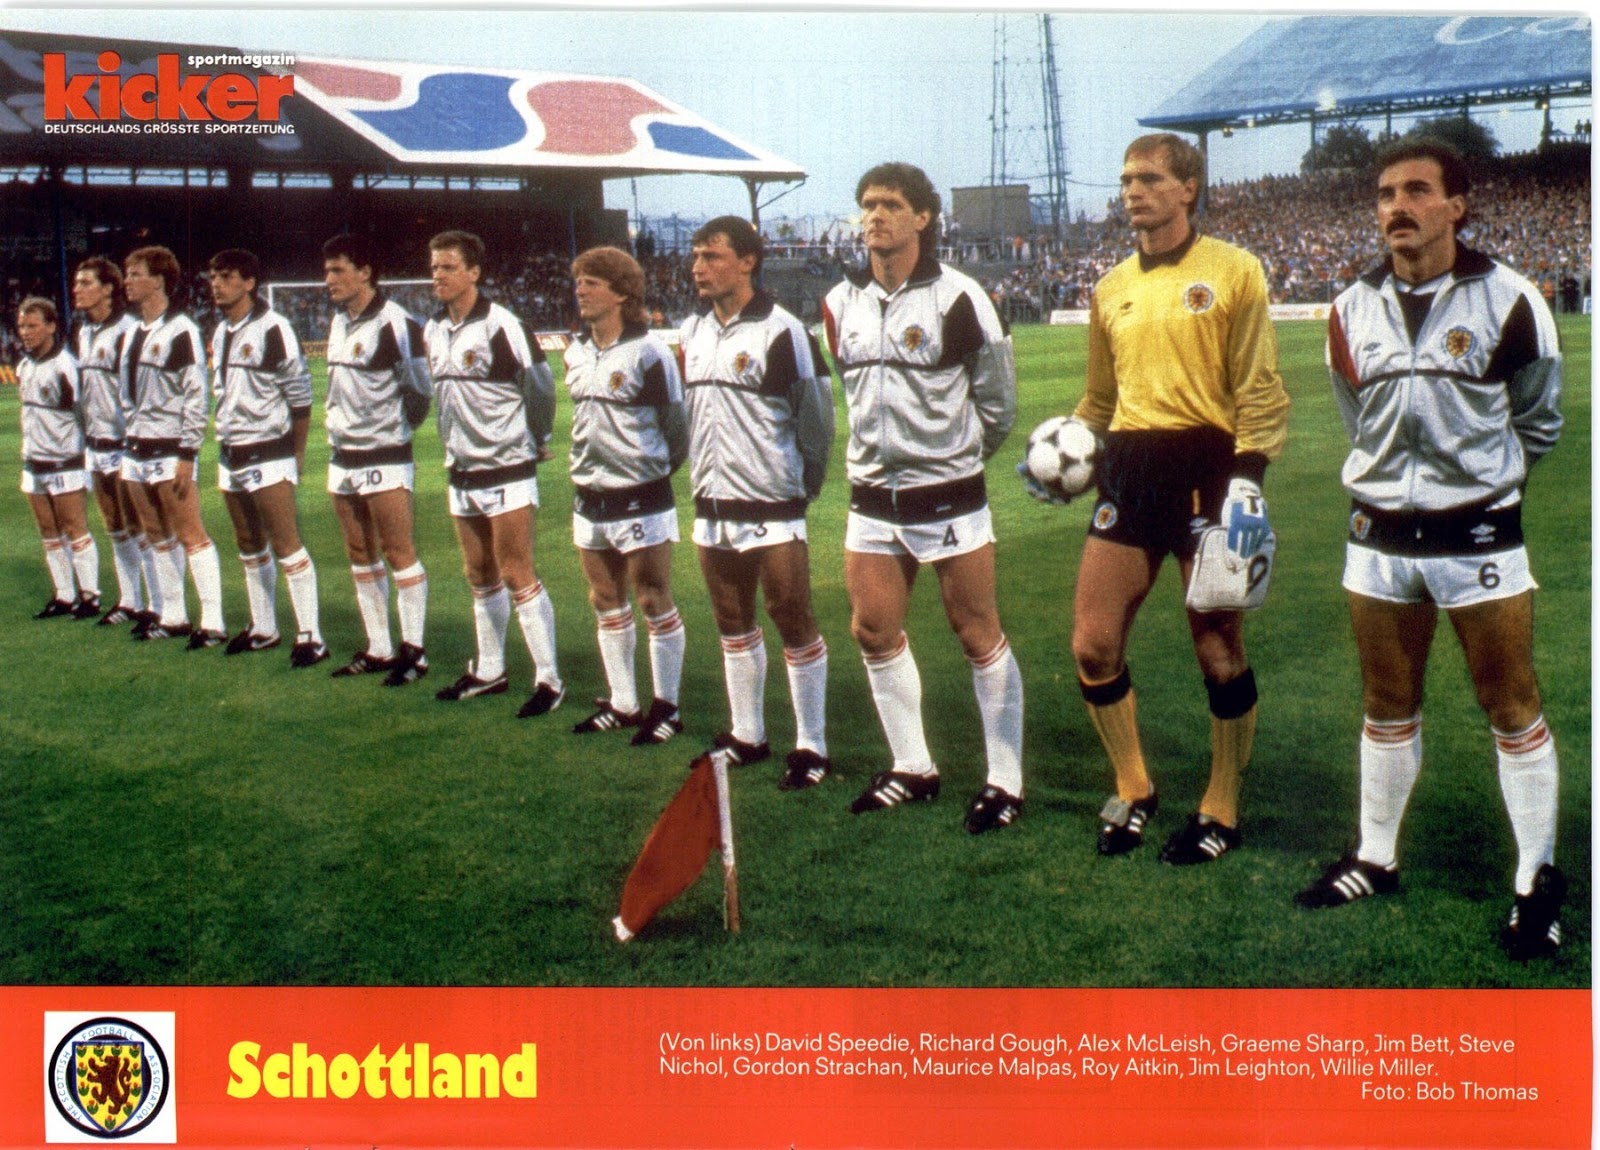 Soccer Nostalgia: International Season 1985/86, Part 2 (September 1985)